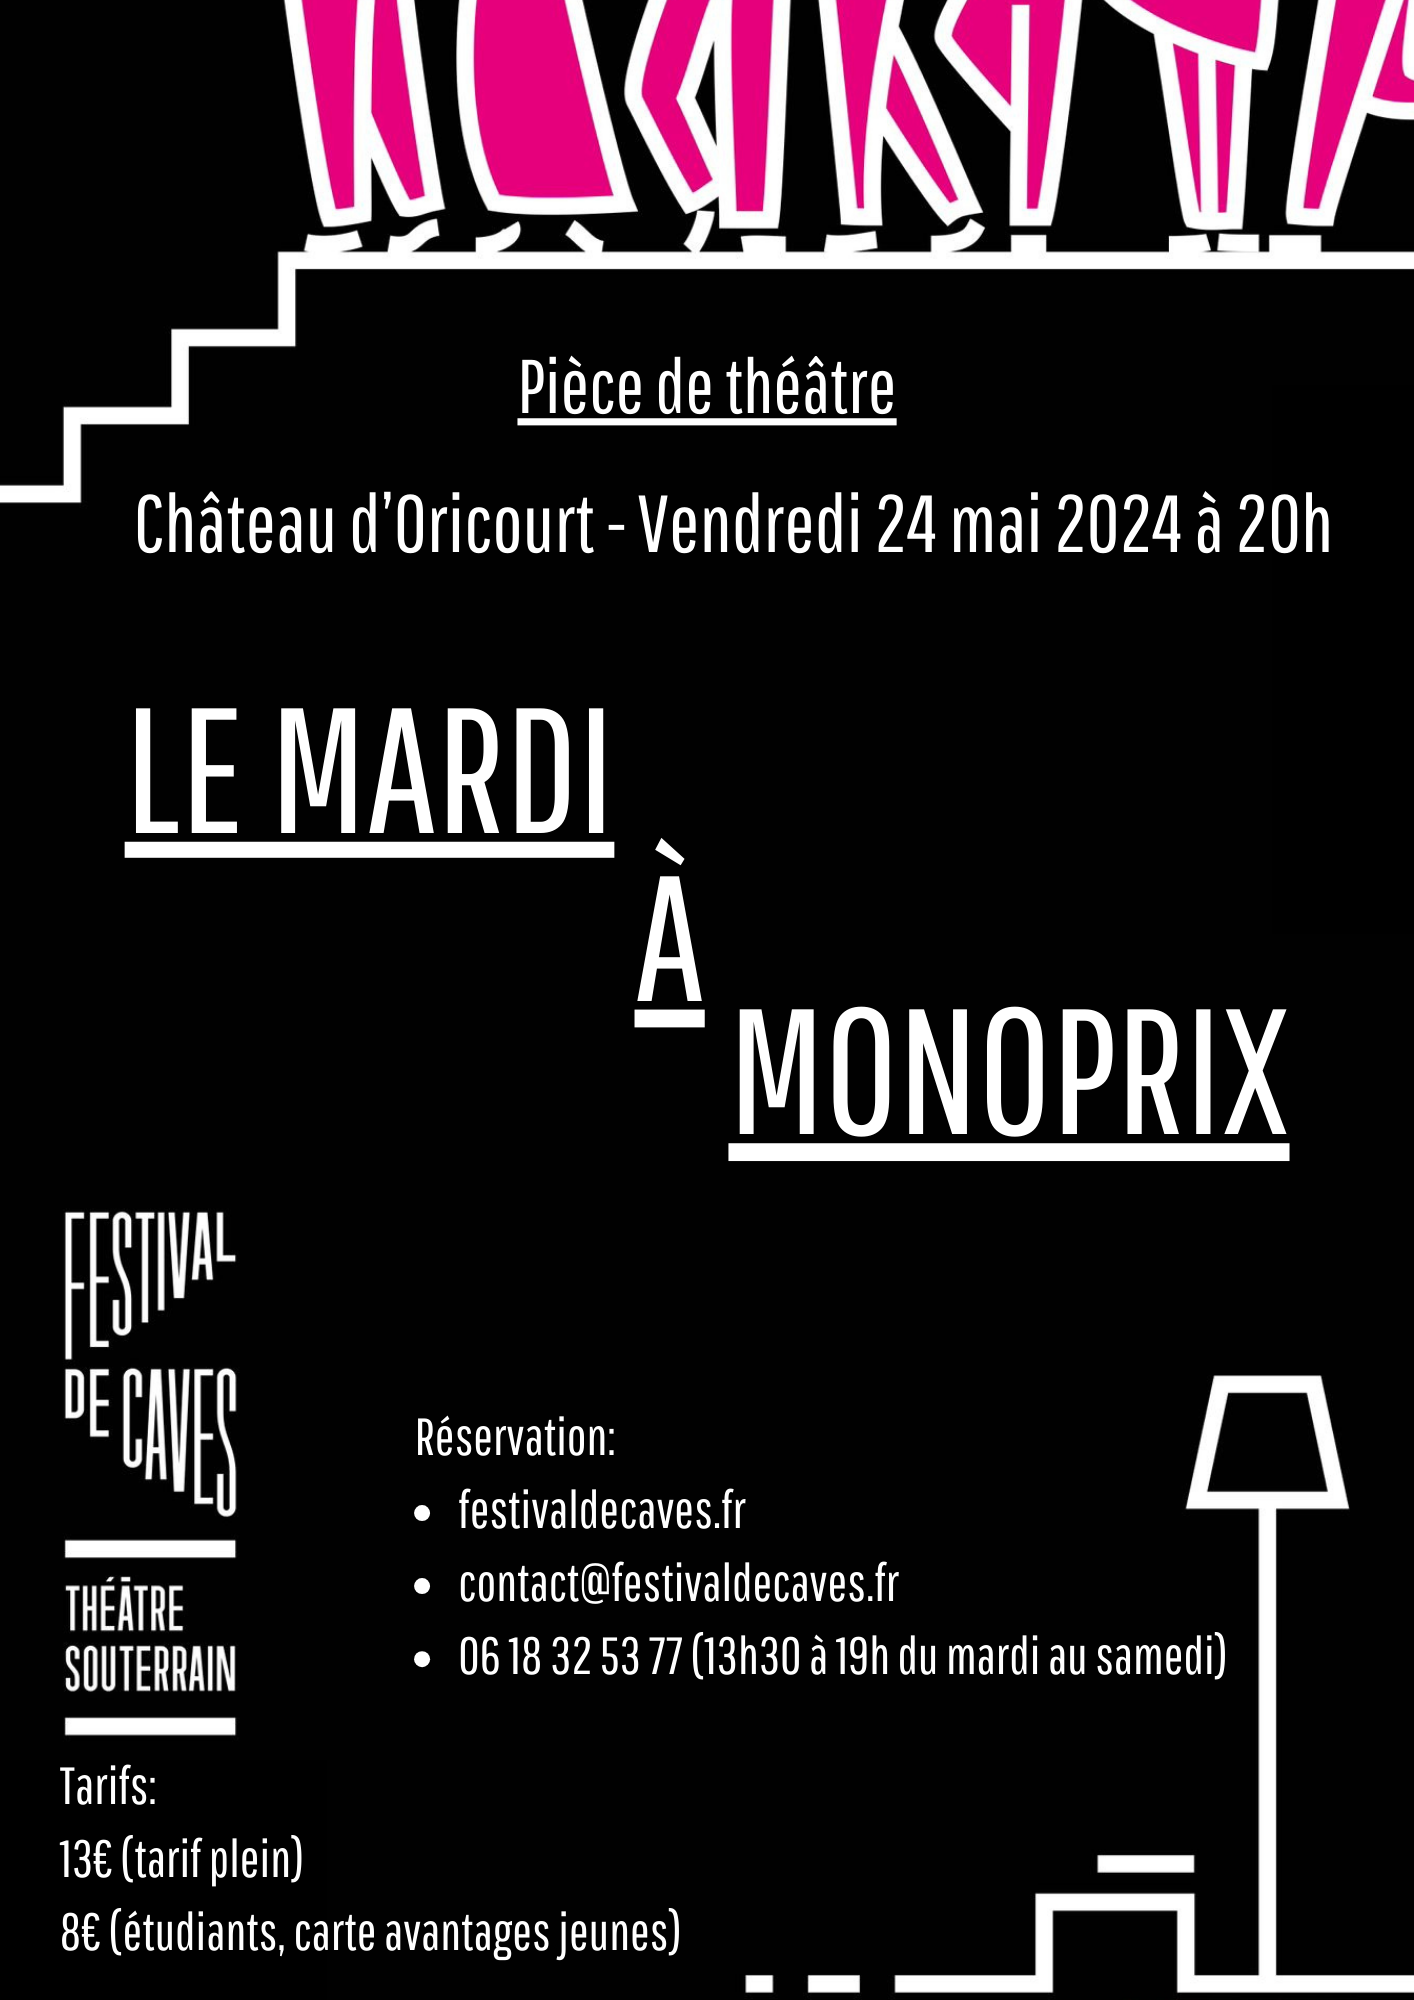 Théâtre à Oricourt- Festival de caves 